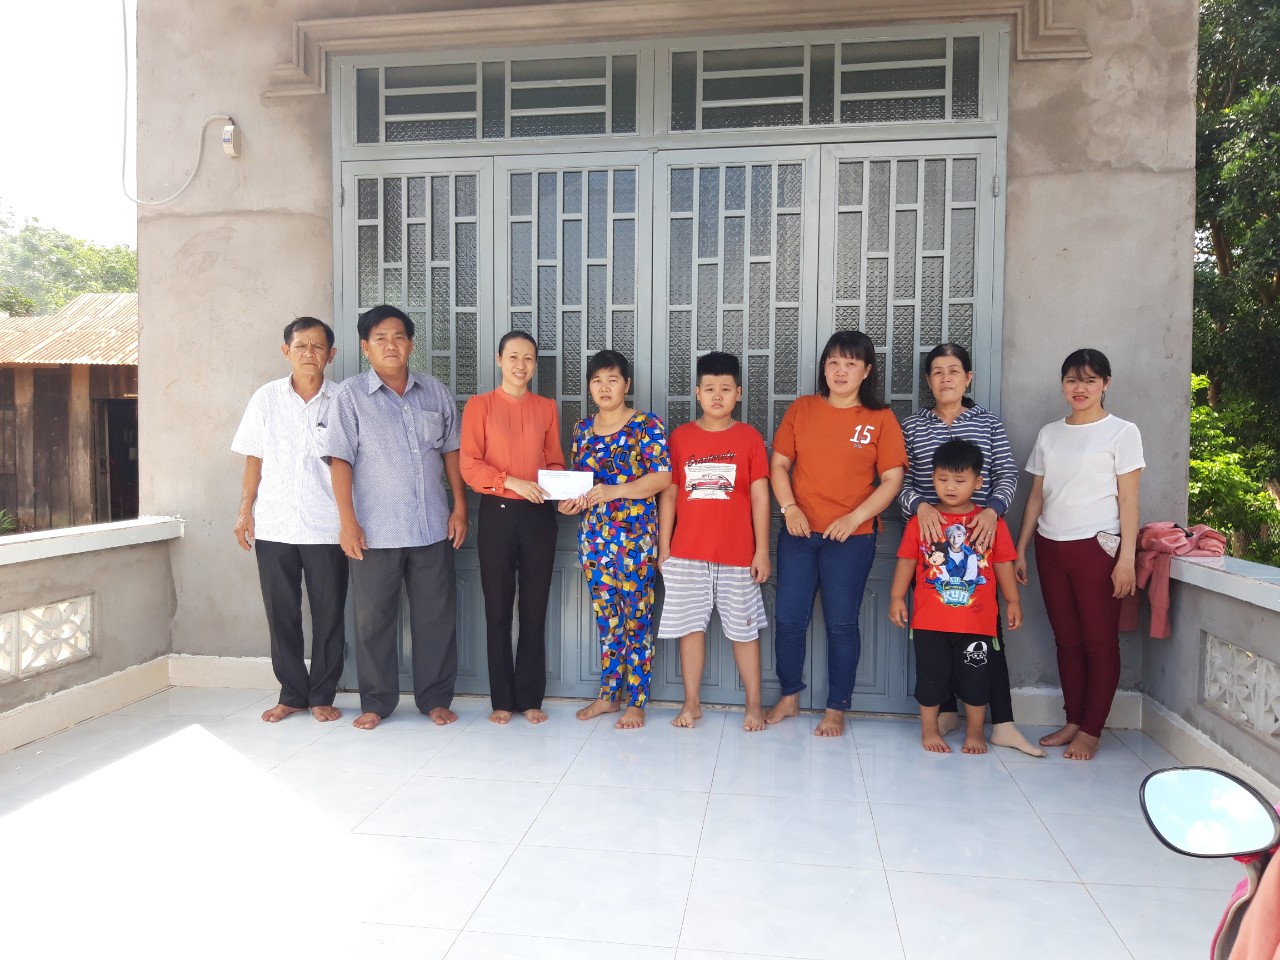 Hội Liên hiệp Phụ nữ xã Lộc Hiệp trao tặng nhà “Mái ấm tình thương” cho hội viên phụ nữ hộ nghèo khó khăn về nhà ở